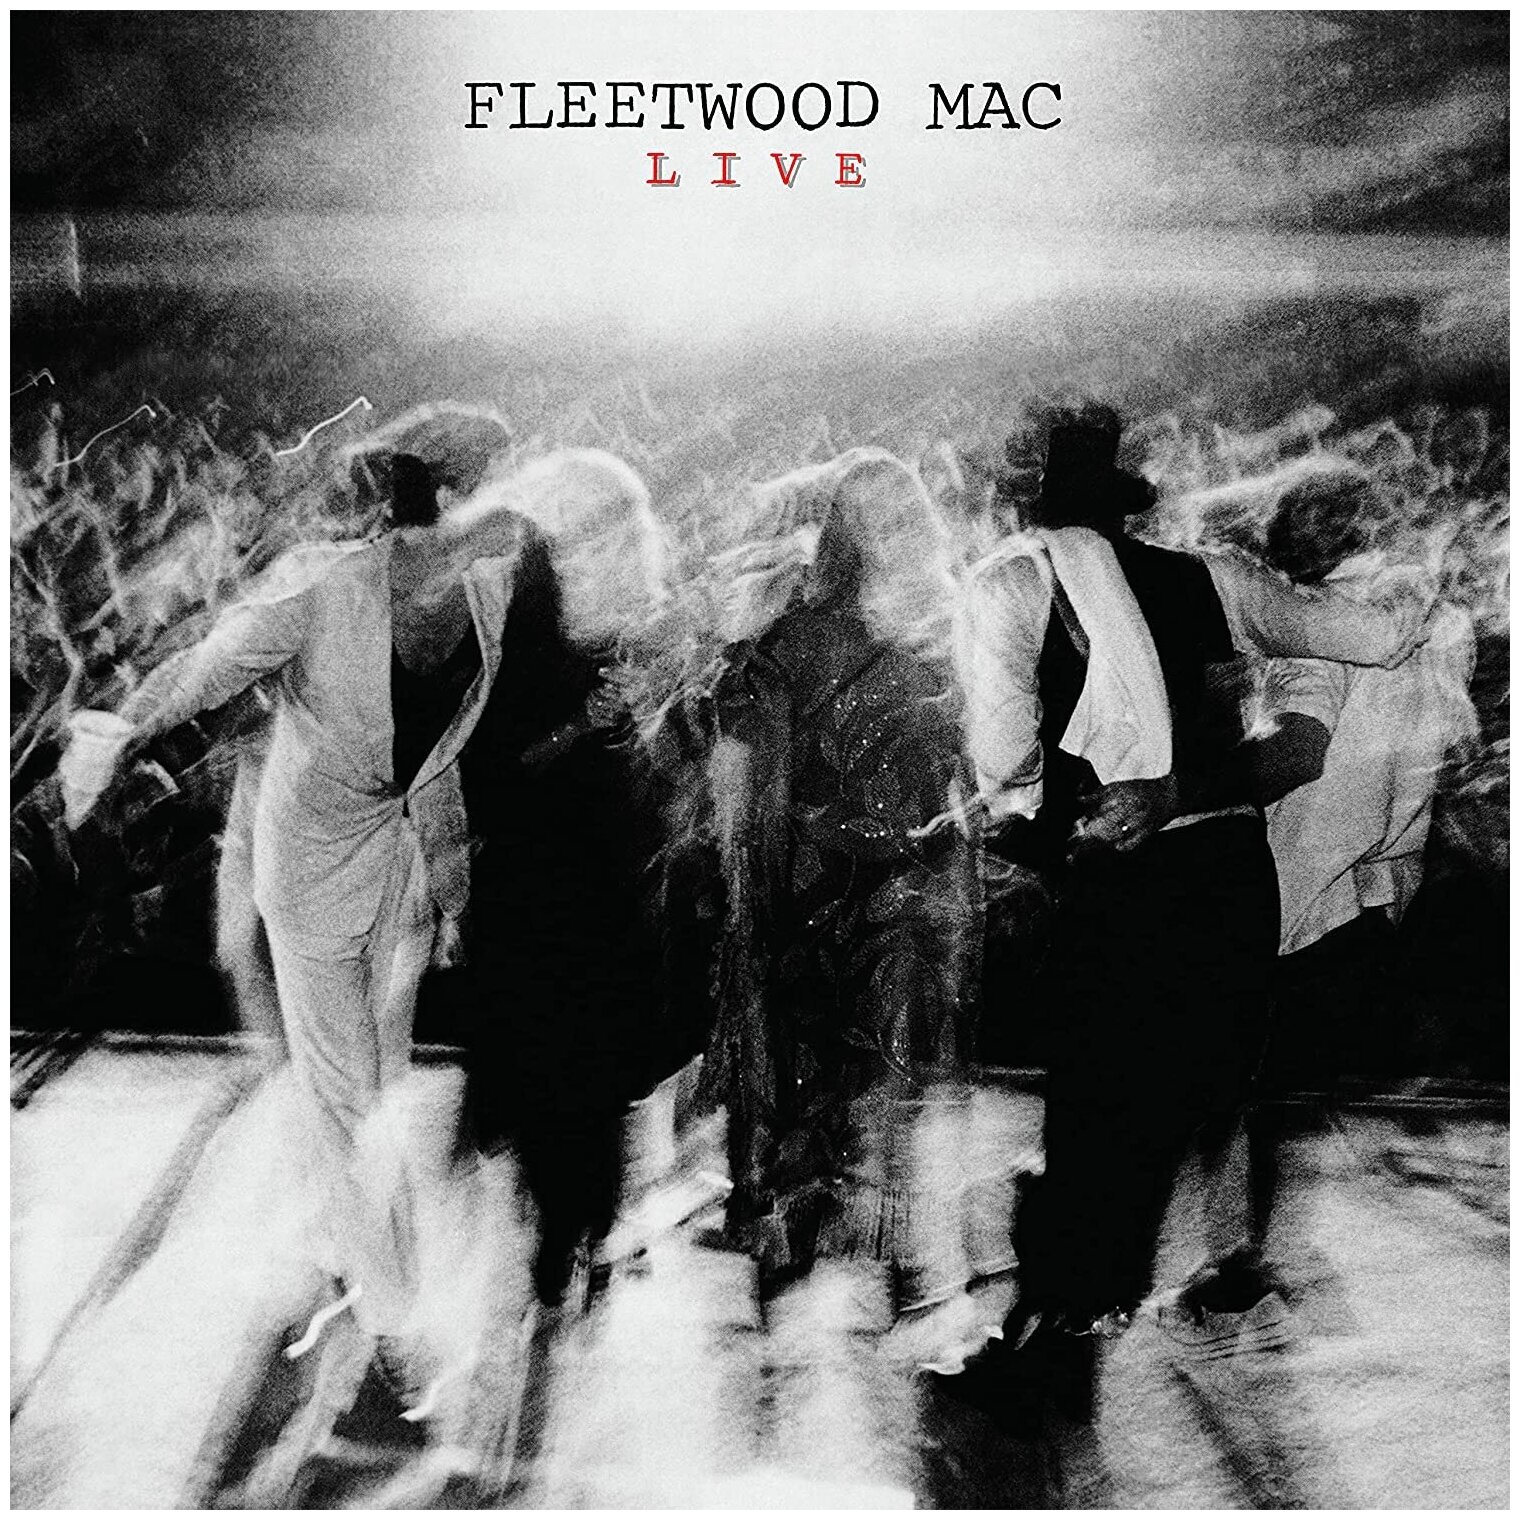 Fleetwood Mac Fleetwood Mac - Live (180 Gr, 2 LP) WM - фото №1